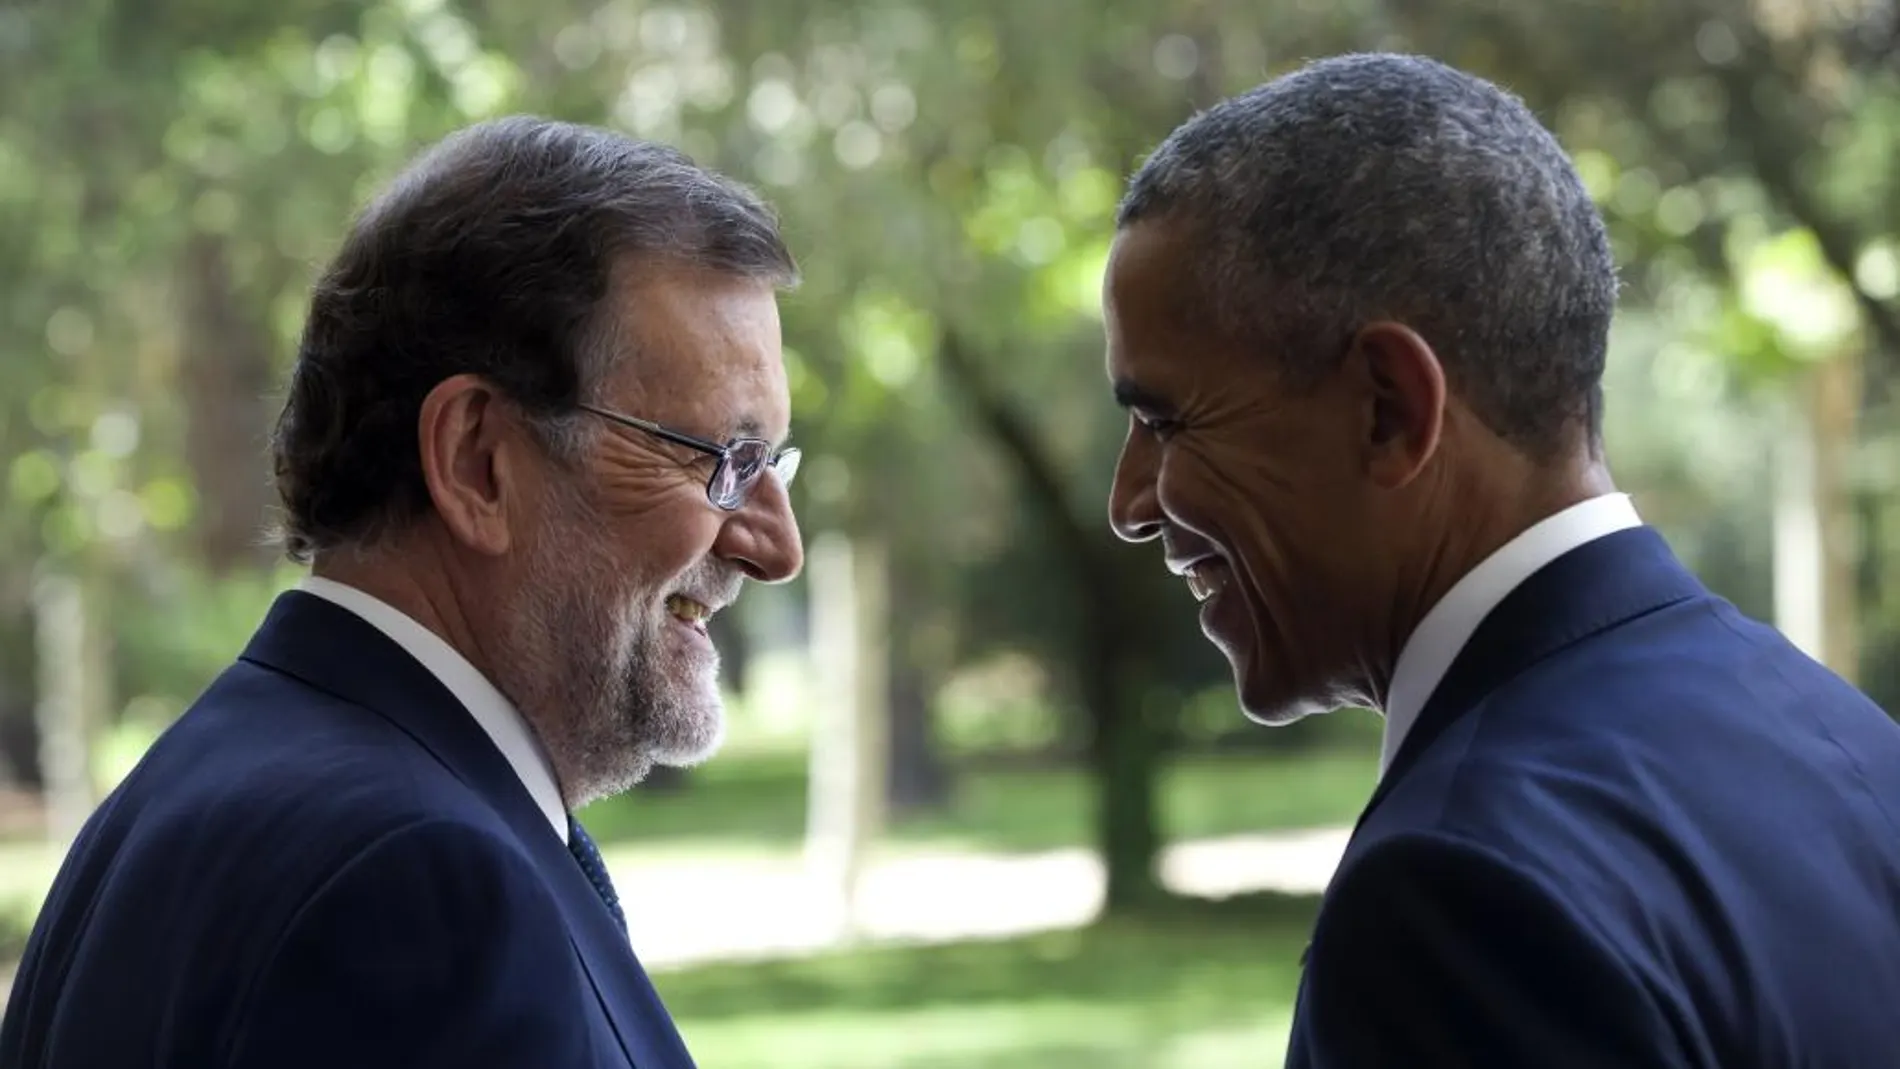 El presidente del Gobierno en funciones, Mariano Rajoy (i), ha obsequido un jamón al presidente de los EEUU, Barack Obama